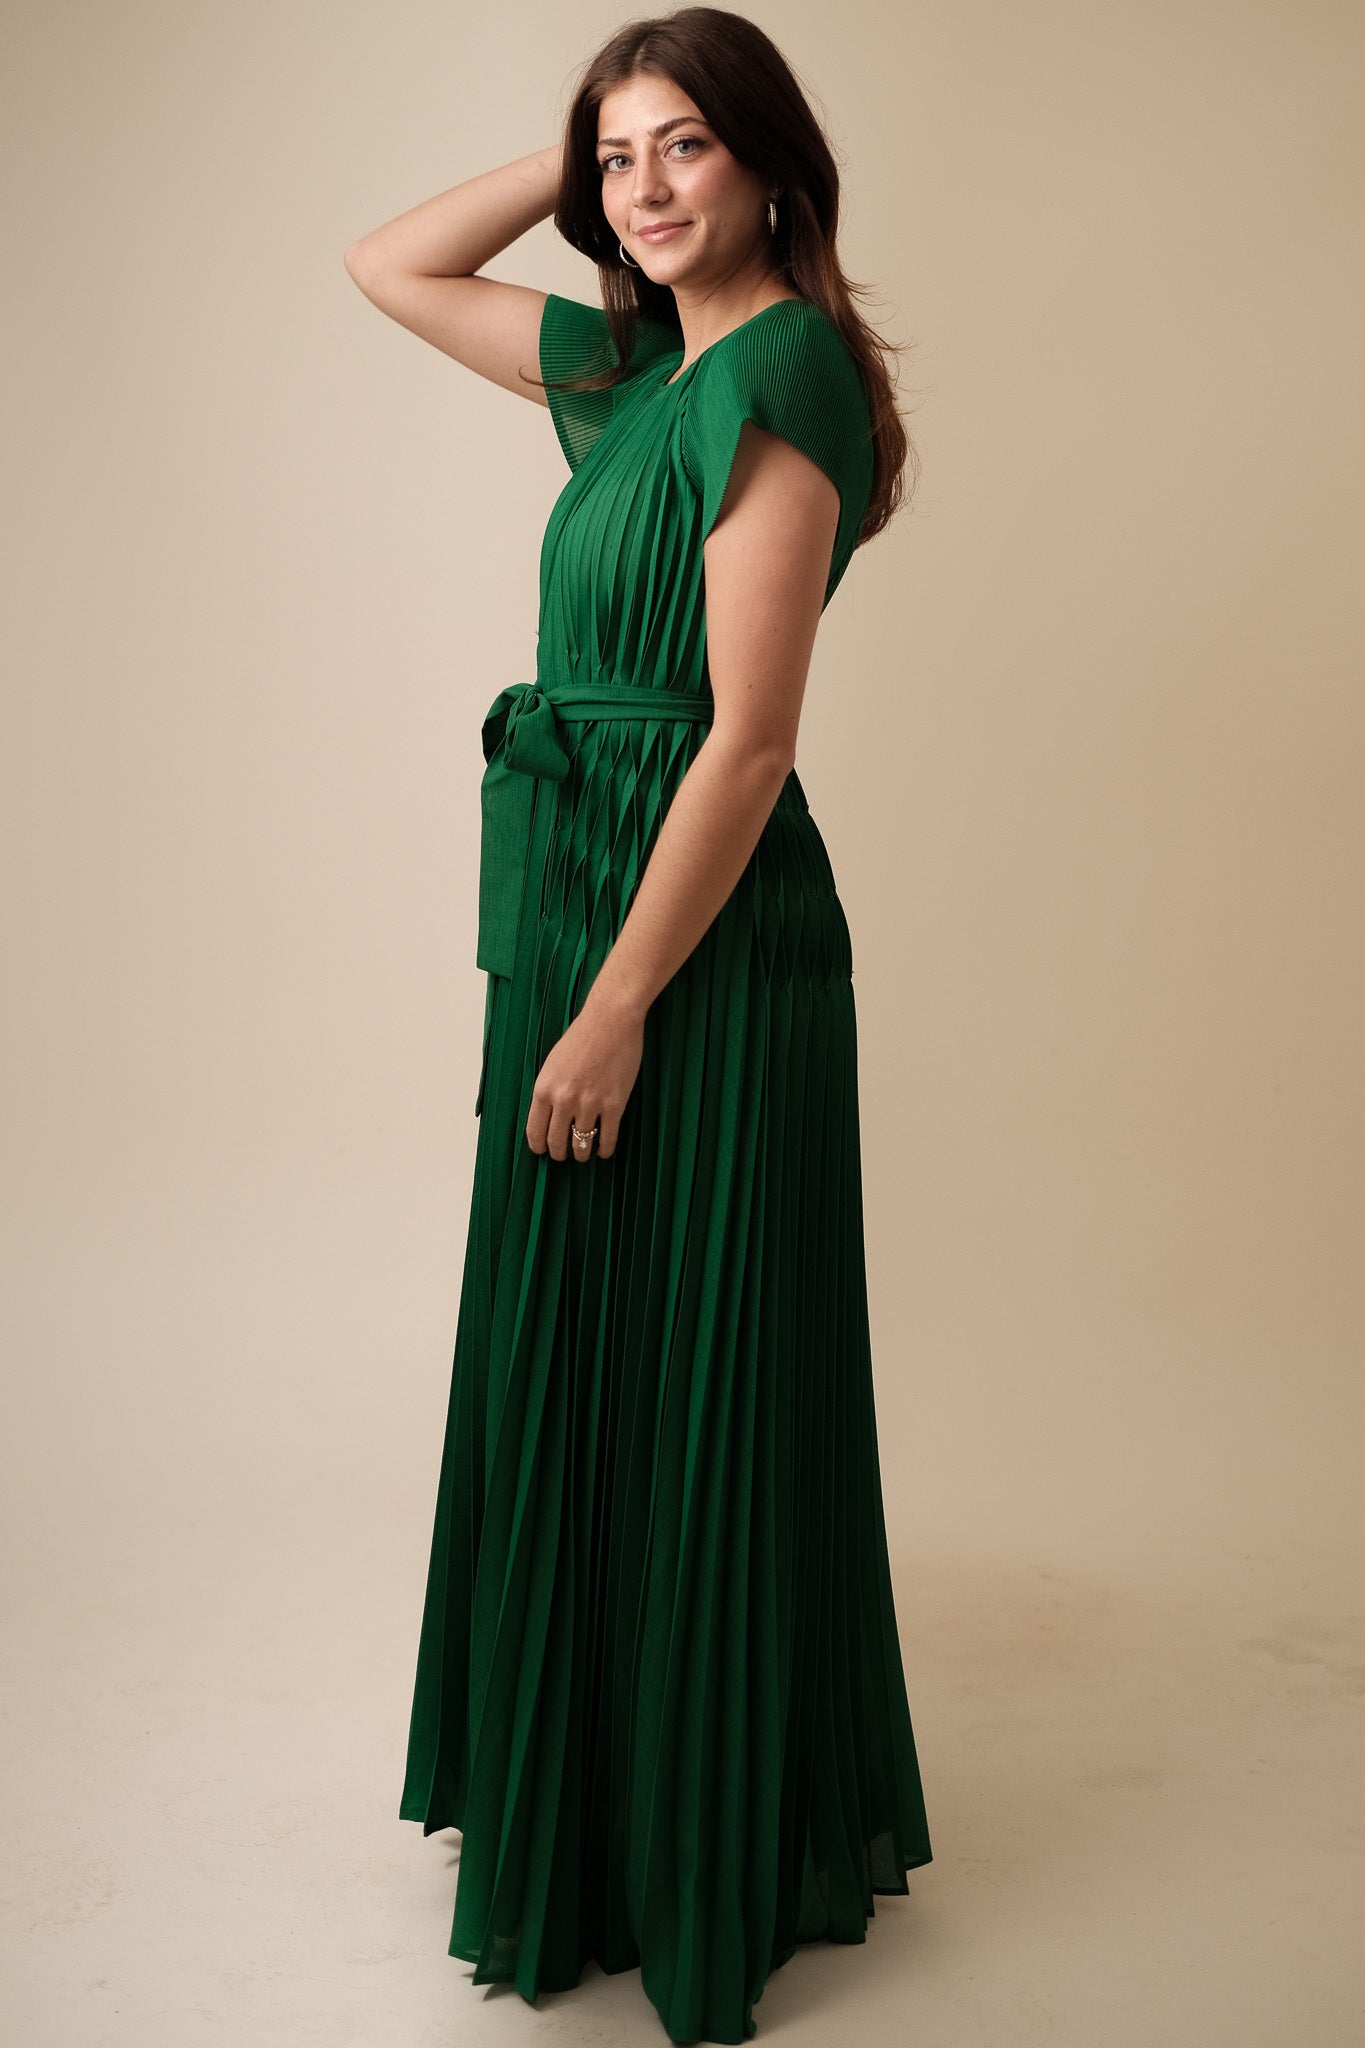 Current Air Darlene Green Pleated Tie Waist Maxi Dress (L)